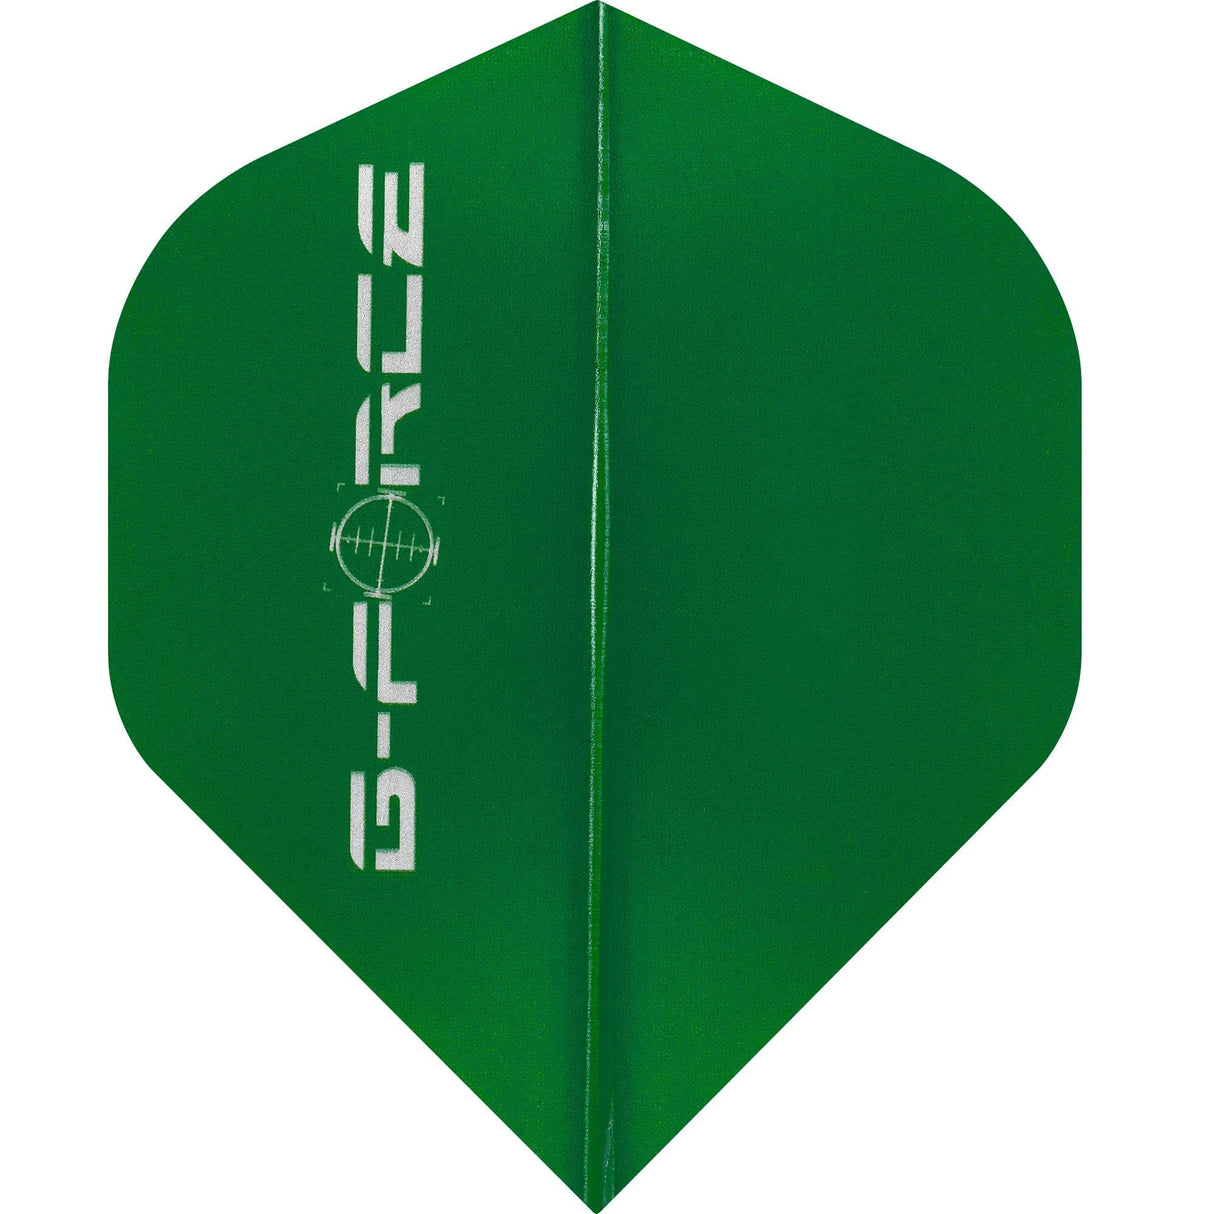 Datadart G-Force Dart Flights - No2 - Std - Transparent Green